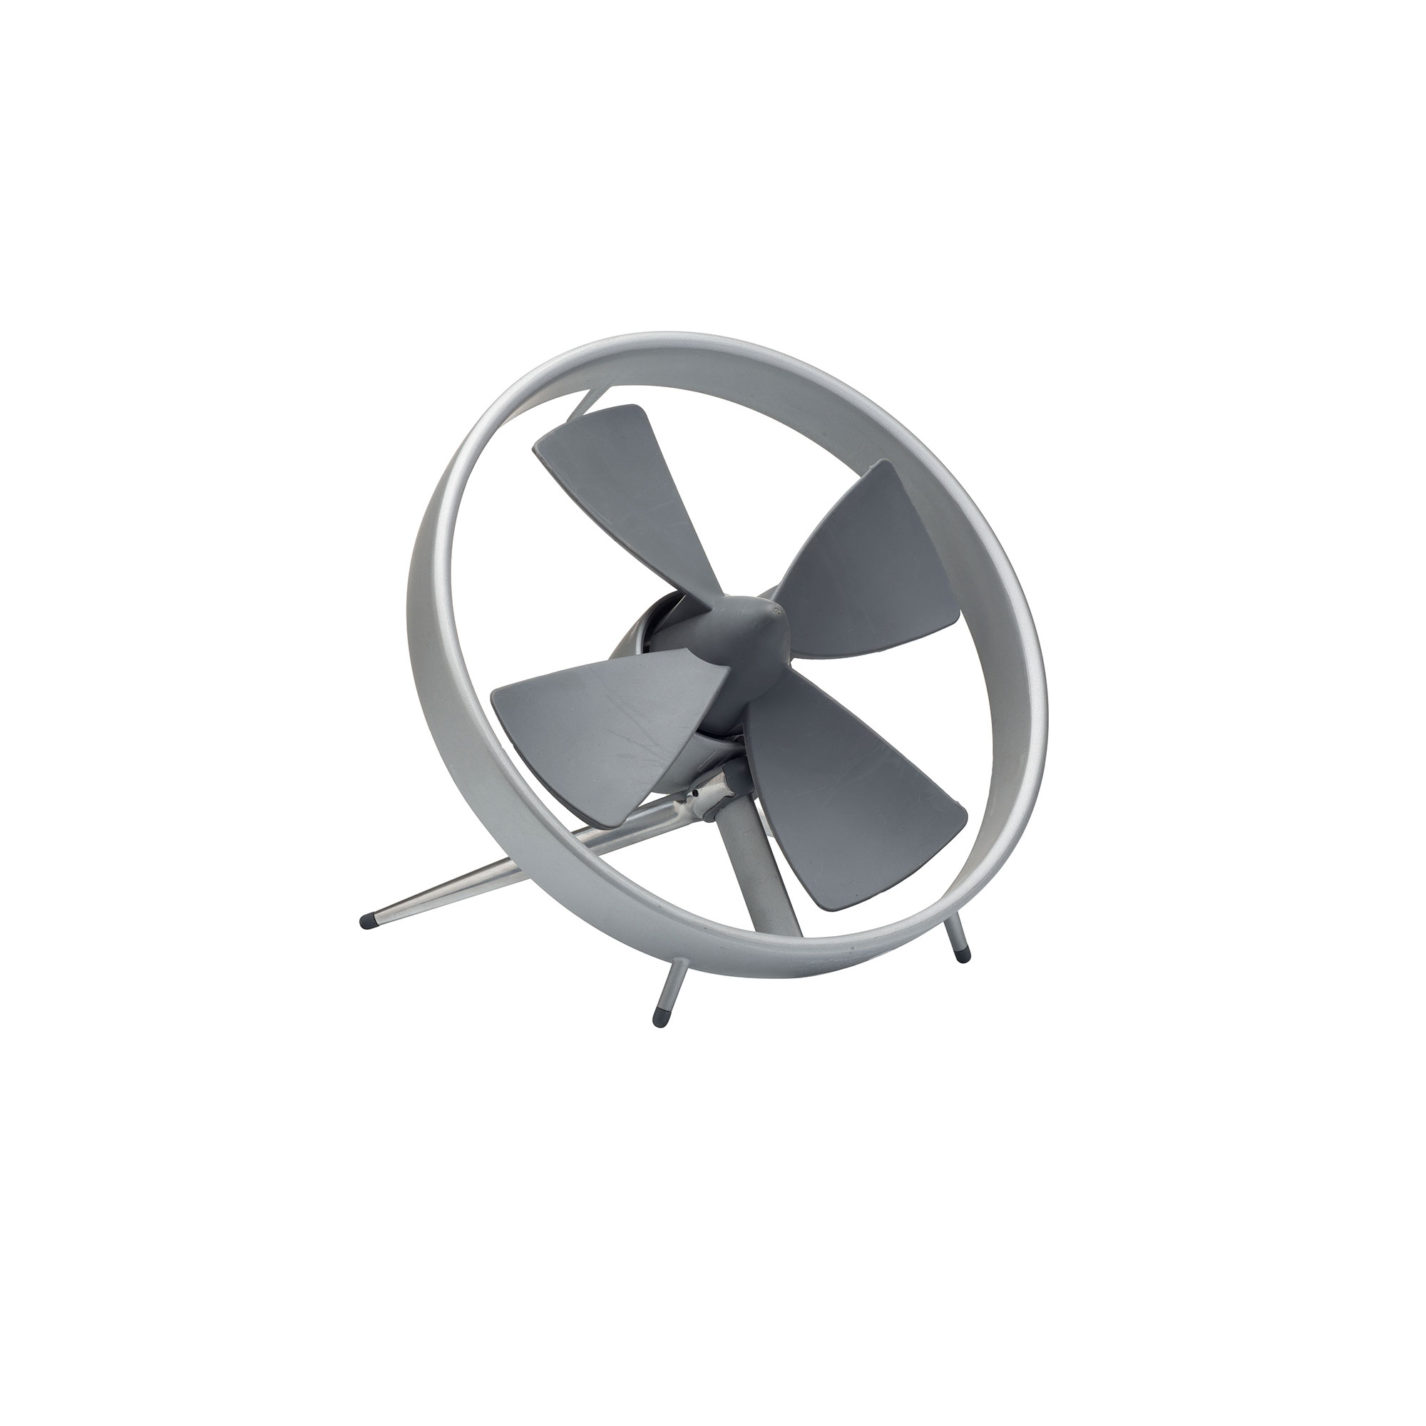 Ventilateur de bureau. Un cercle d’aluminium entoure une hélice grise à quatre pales au centre pointu, et s’appuie sur un support postérieur incliné.